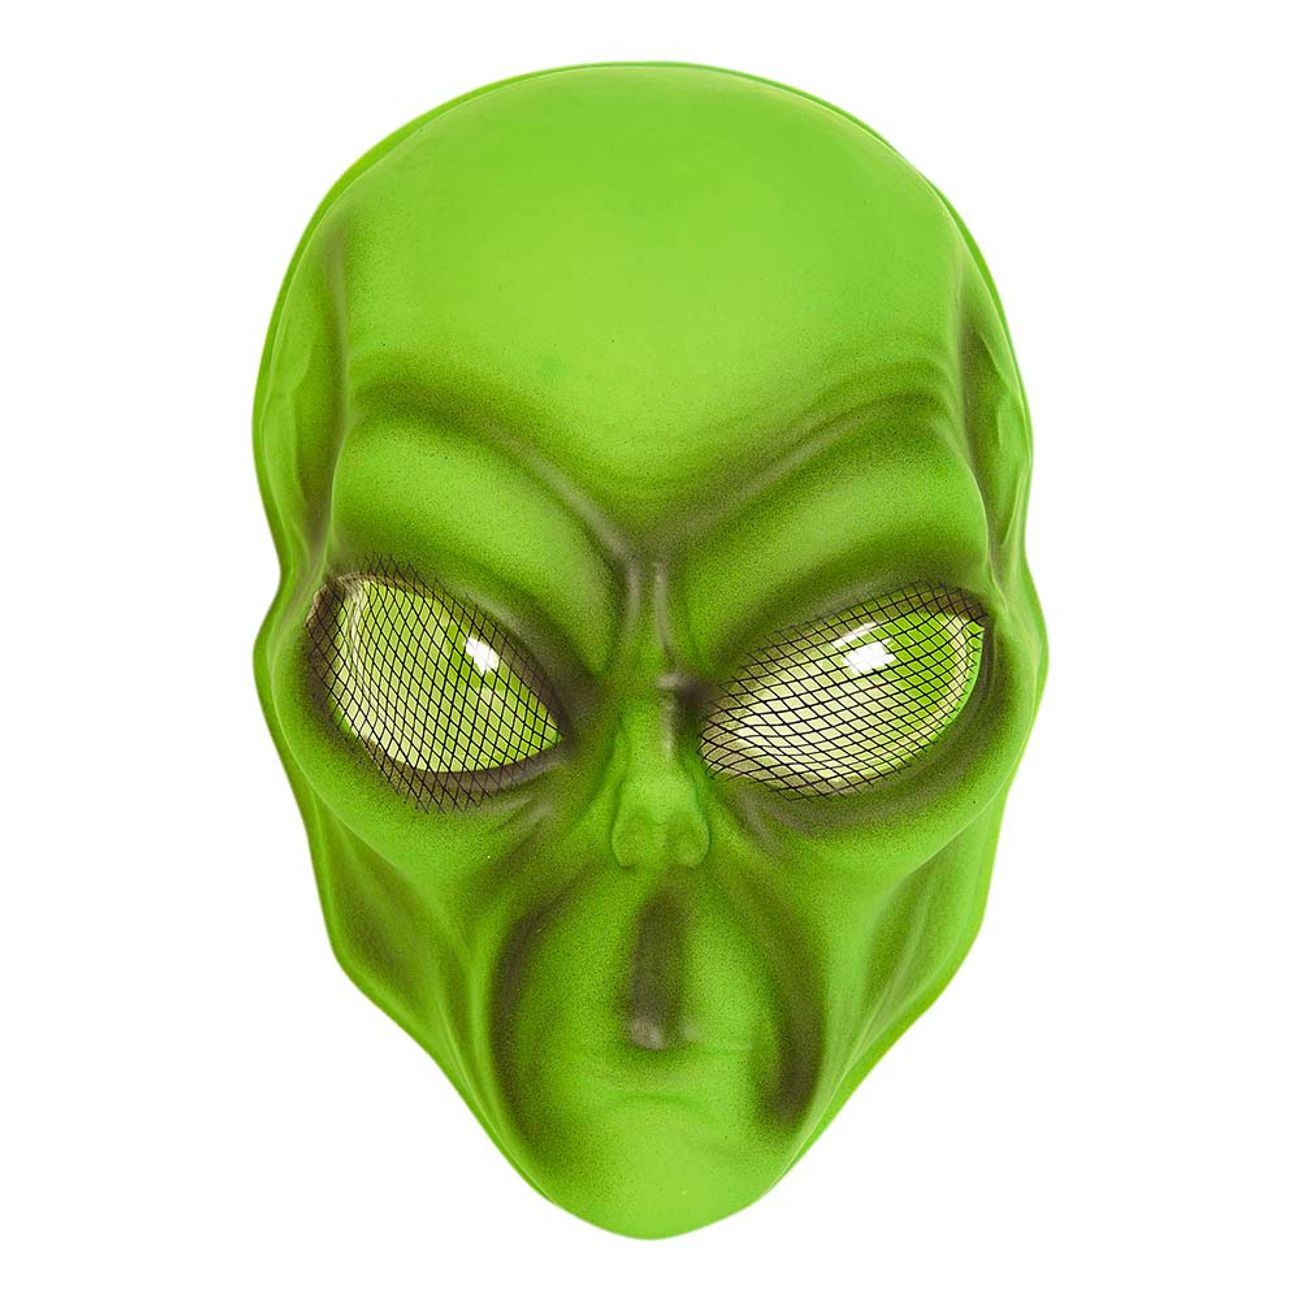 gron-alien-mask-i-plast-96853-1